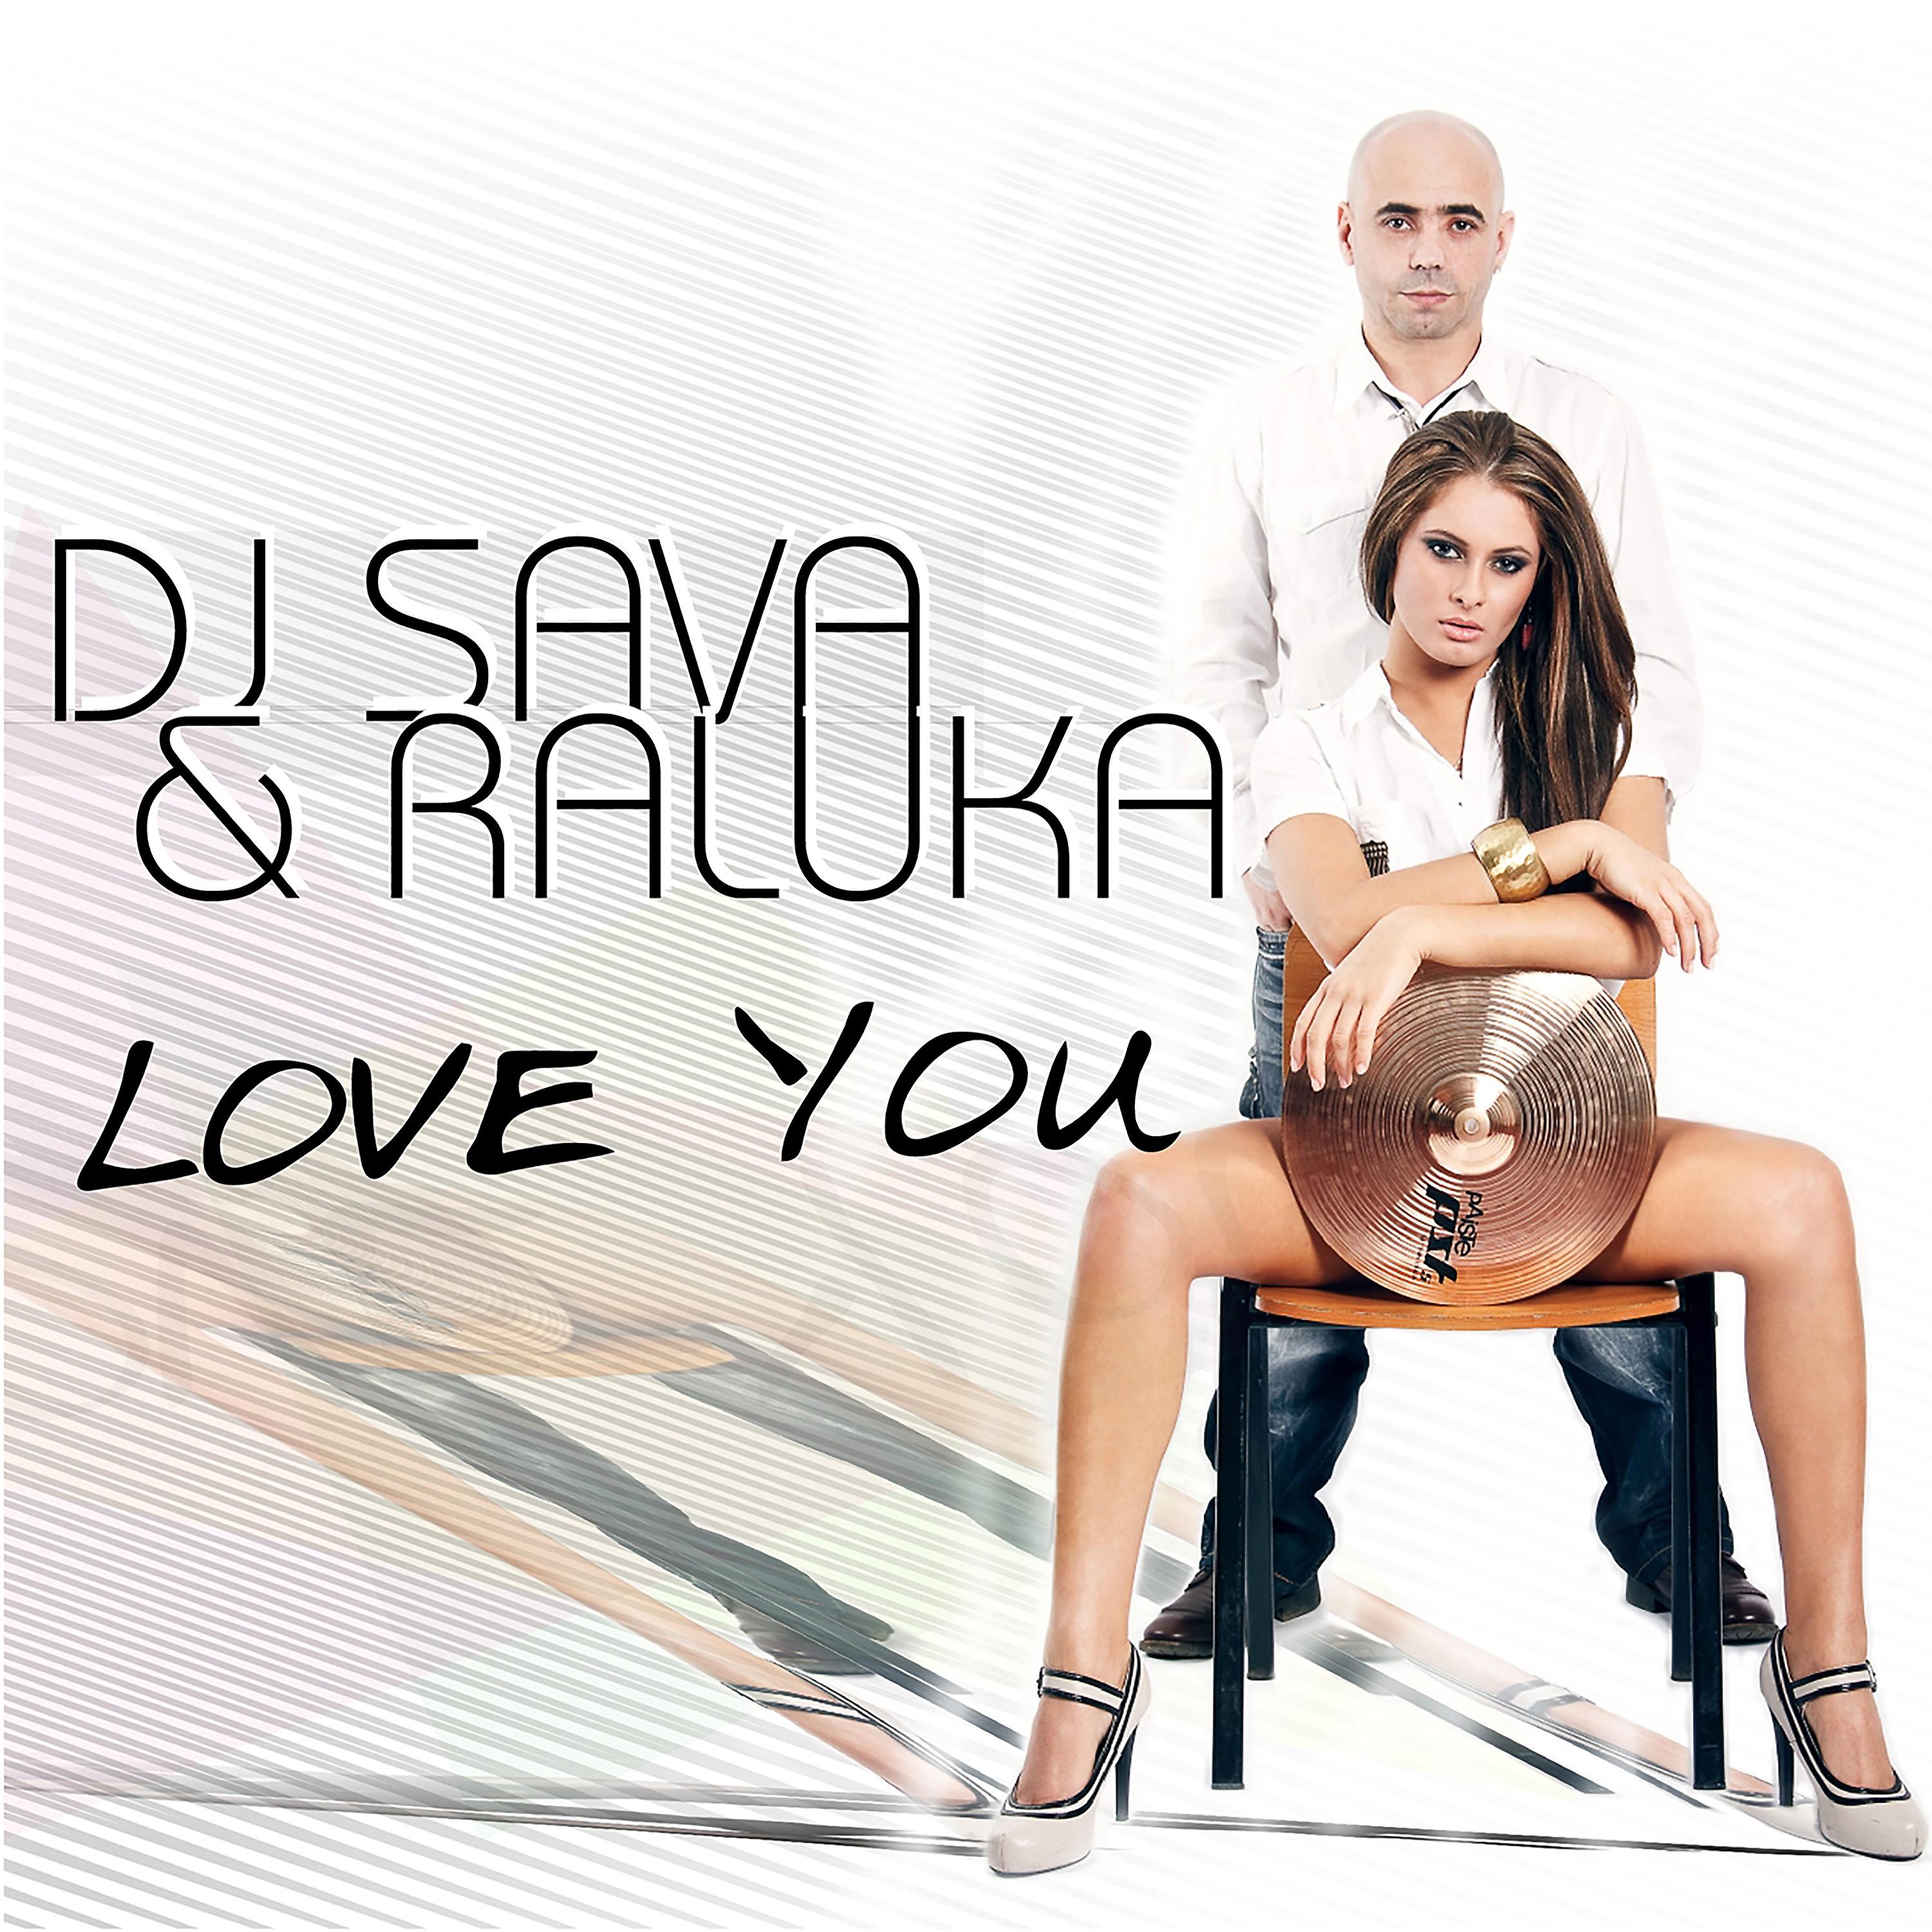 Dj sava feat irina i loved you. DJ Sava & Raluka. DJ Sava feat.Raluka Love you. DJ Sava Irina i Loved you. DJ Sava надпись.